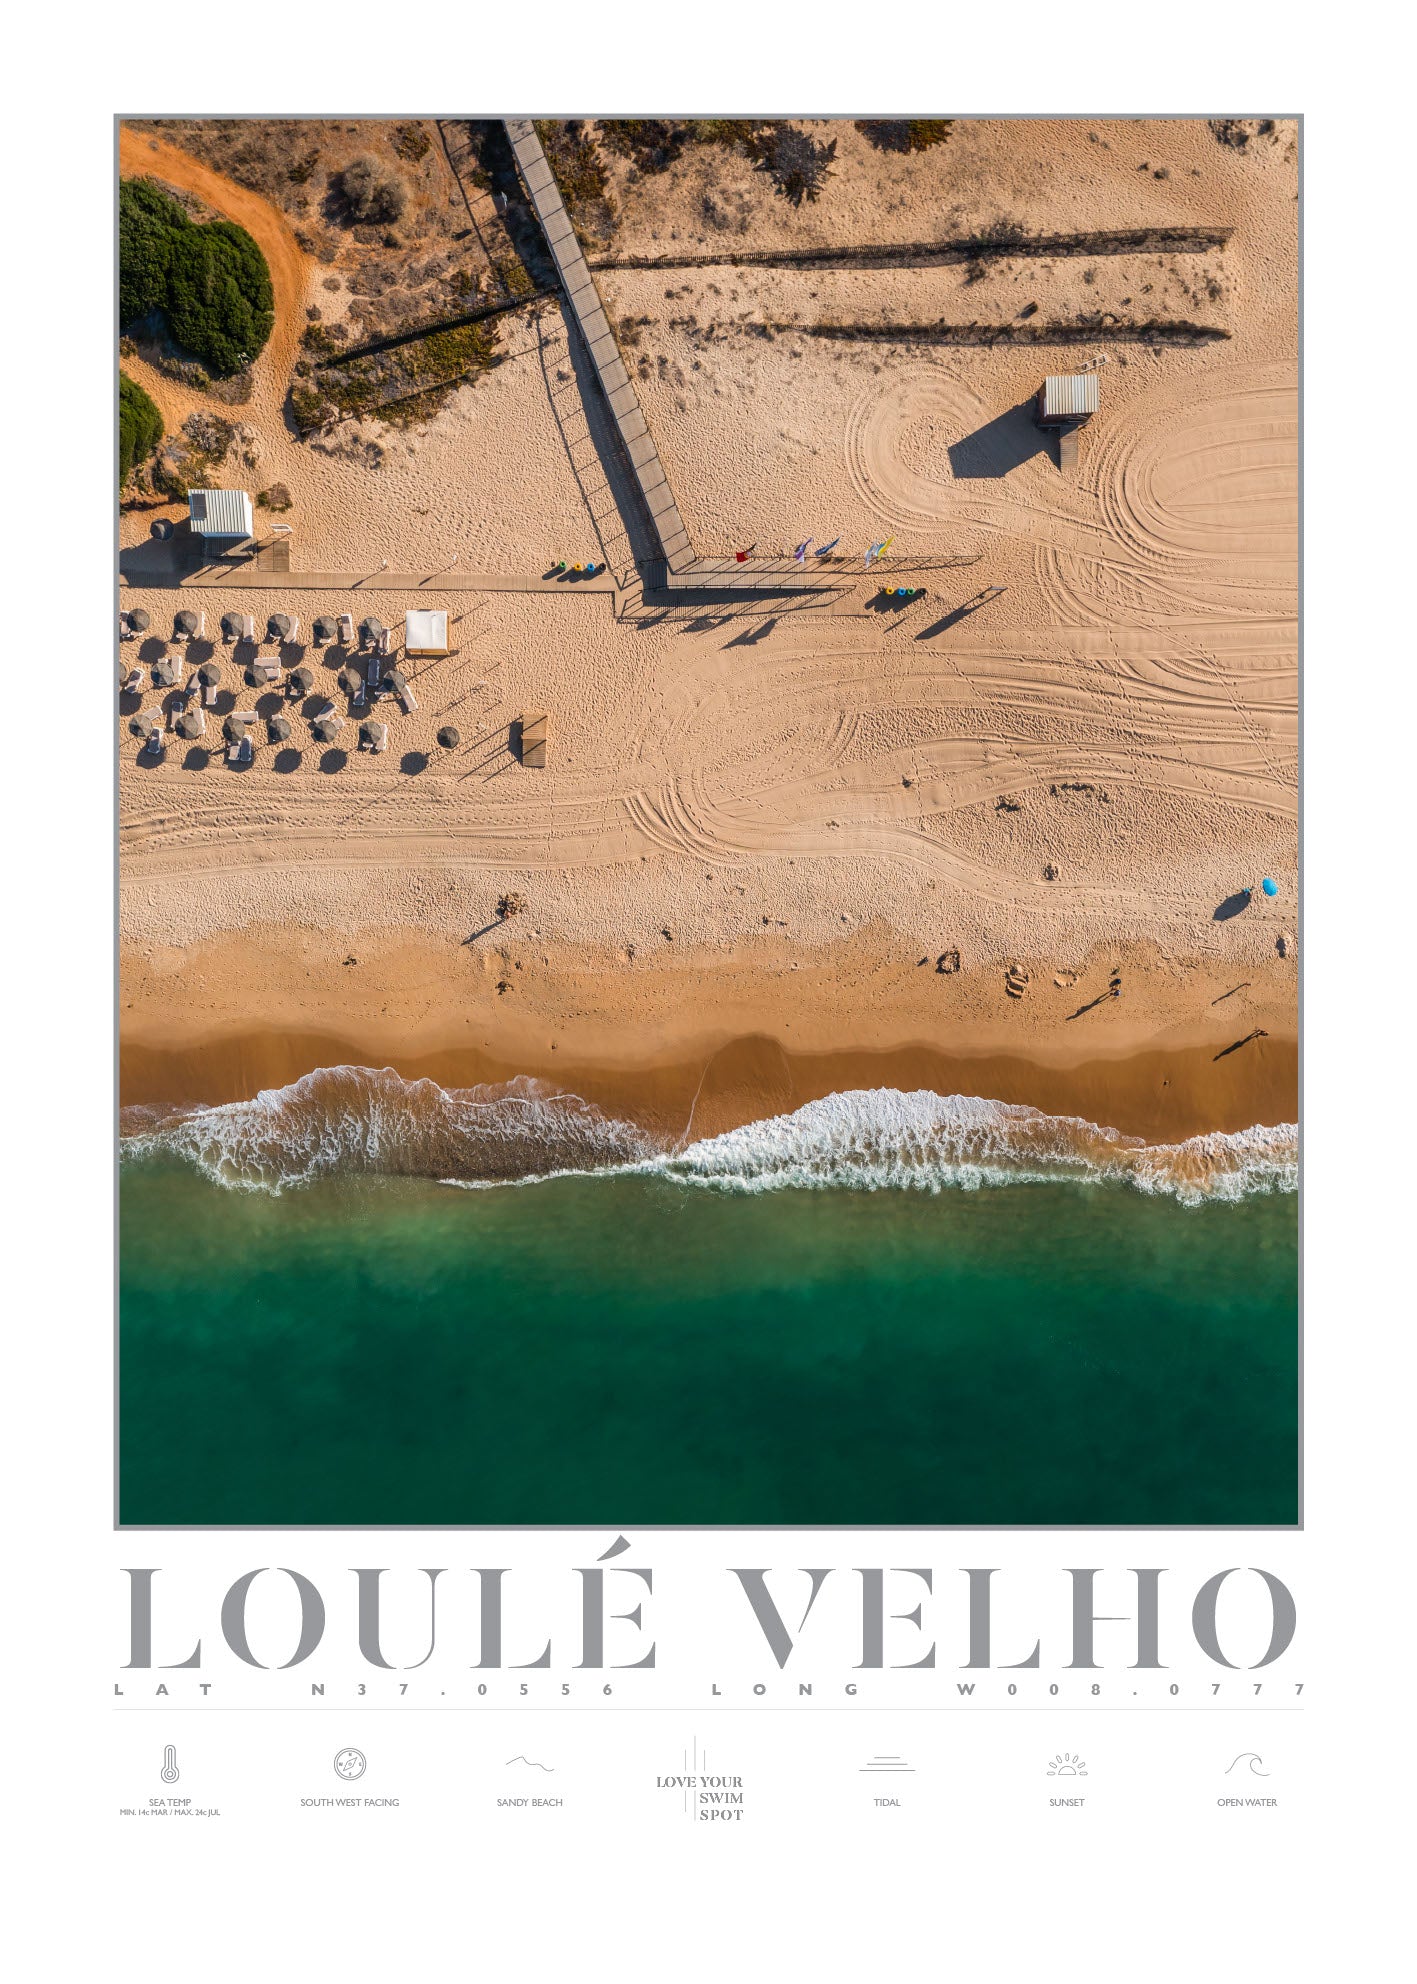 LOULÉ VELHO BEACH PORTUGAL